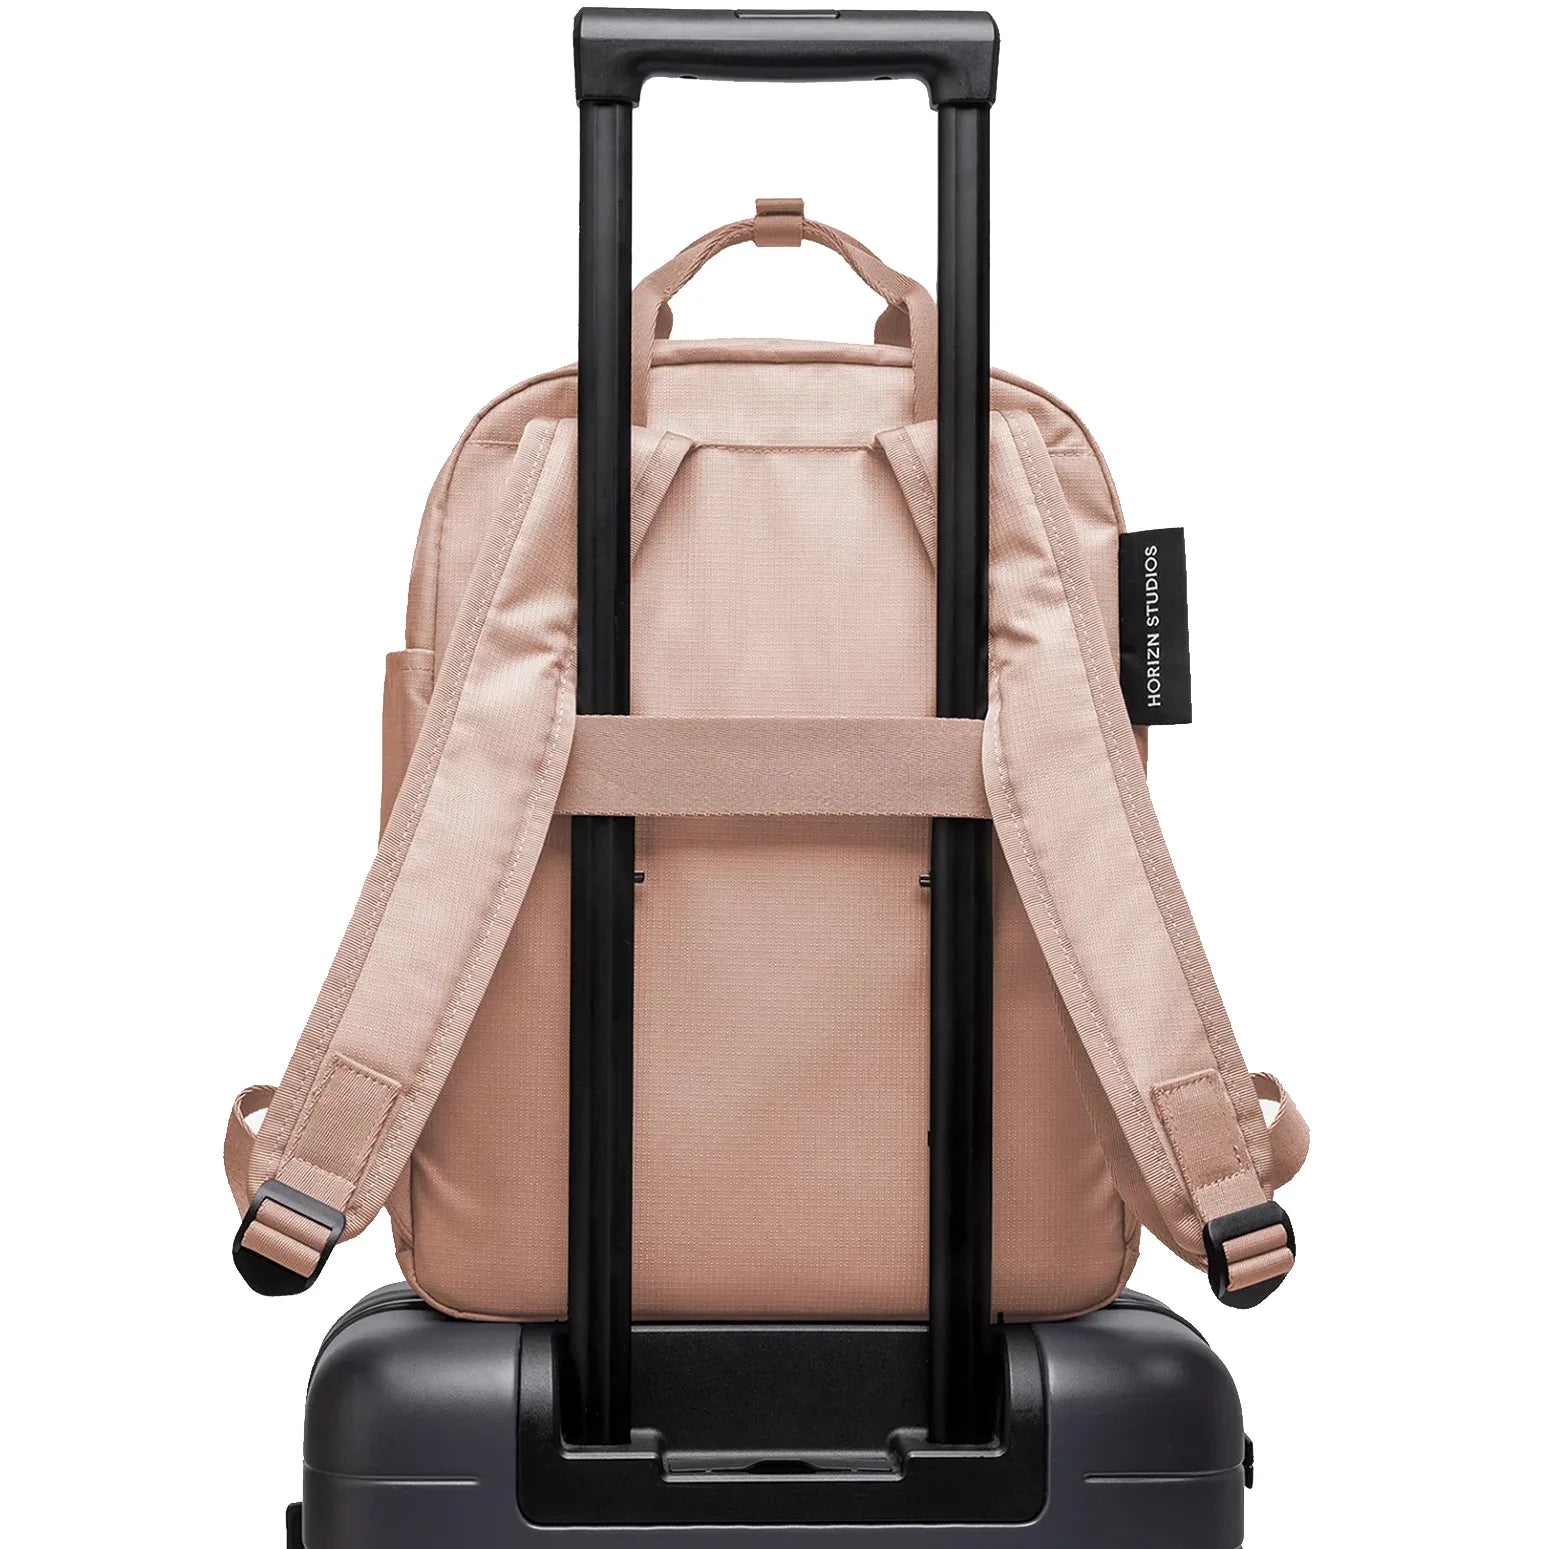 Horizn Studios Shibuya Totepack backpack 39 cm - light quartz gray